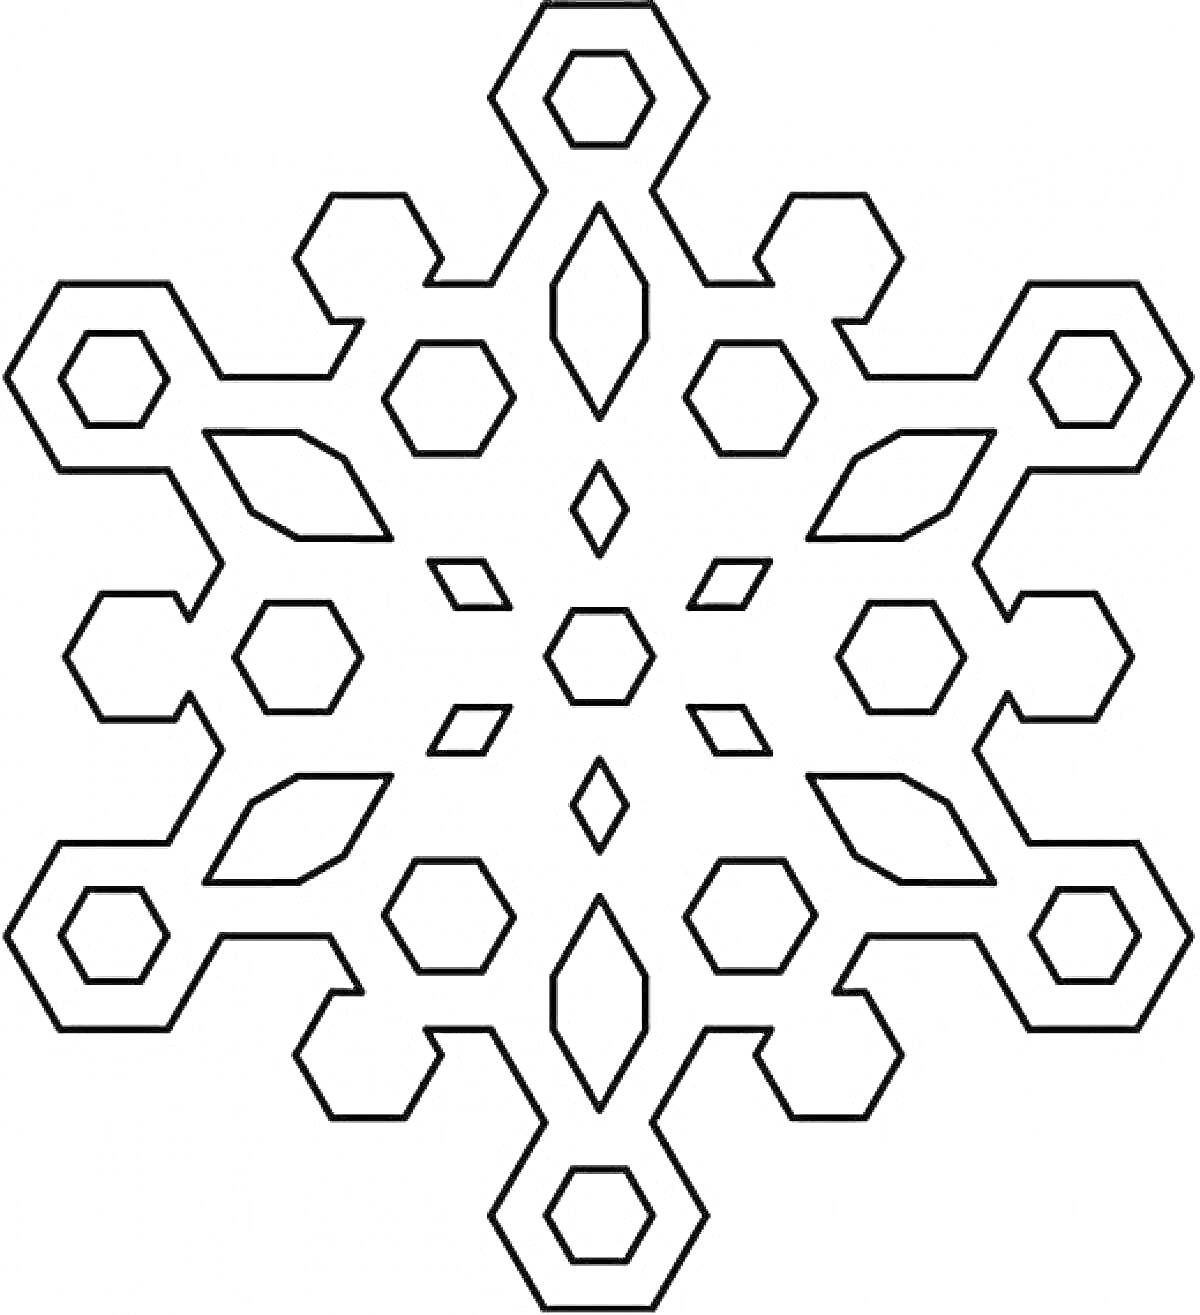 Раскраска Раскраска снежинка, состоящая из шестиугольников, ромбов и восьмиугольников